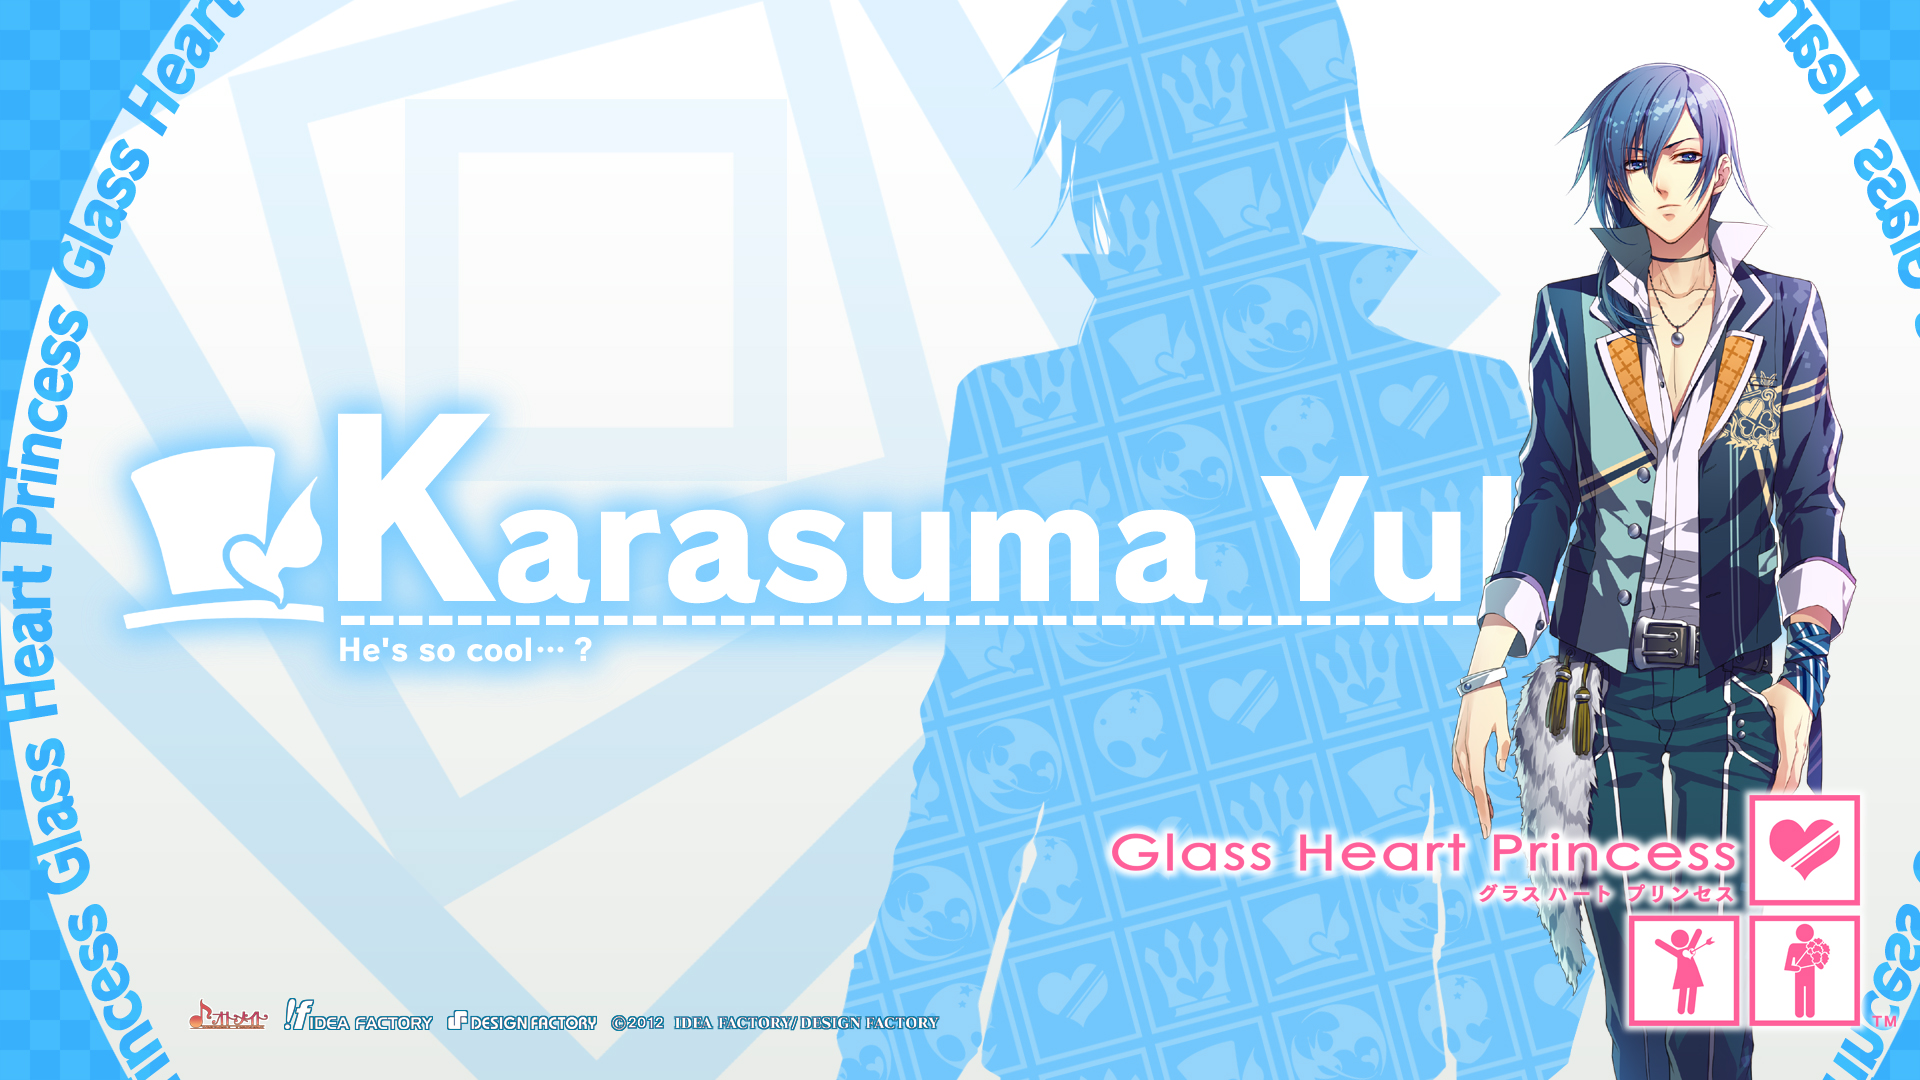 801230 descargar imagen animado, glass heart princess, karasuma yukito: fondos de pantalla y protectores de pantalla gratis